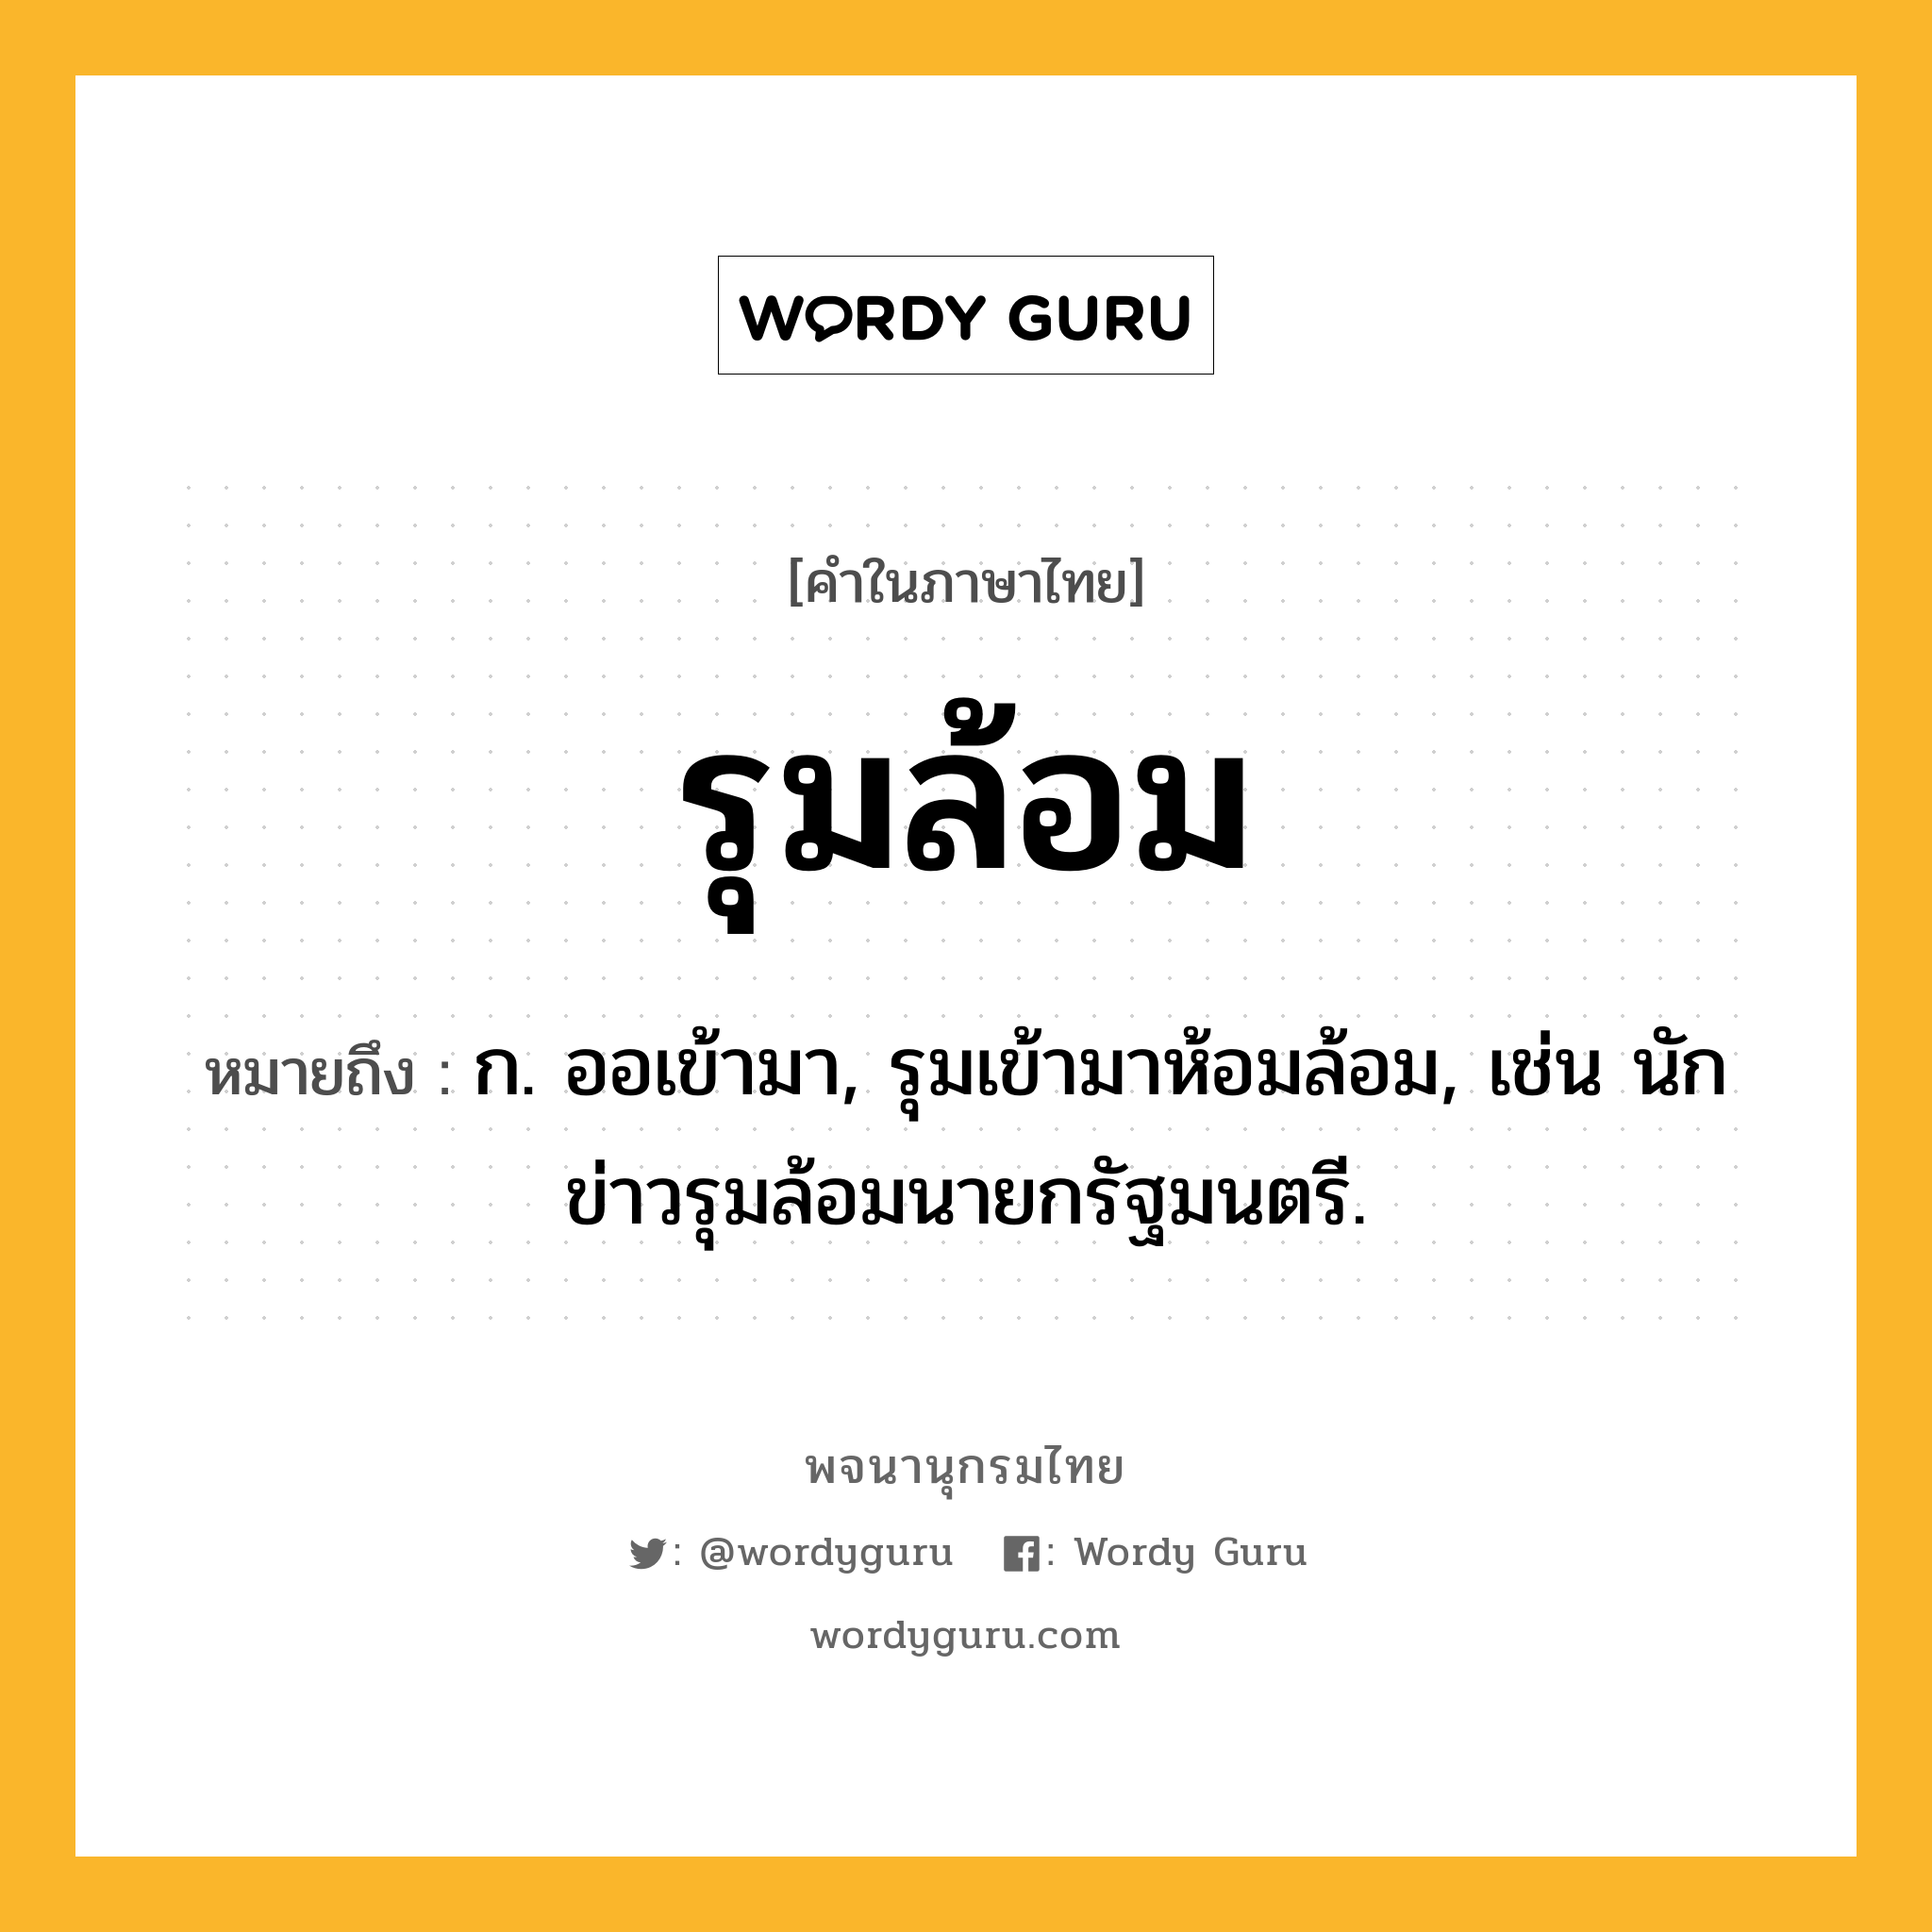 รุมล้อม ความหมาย หมายถึงอะไร?, คำในภาษาไทย รุมล้อม หมายถึง ก. ออเข้ามา, รุมเข้ามาห้อมล้อม, เช่น นักข่าวรุมล้อมนายกรัฐมนตรี.